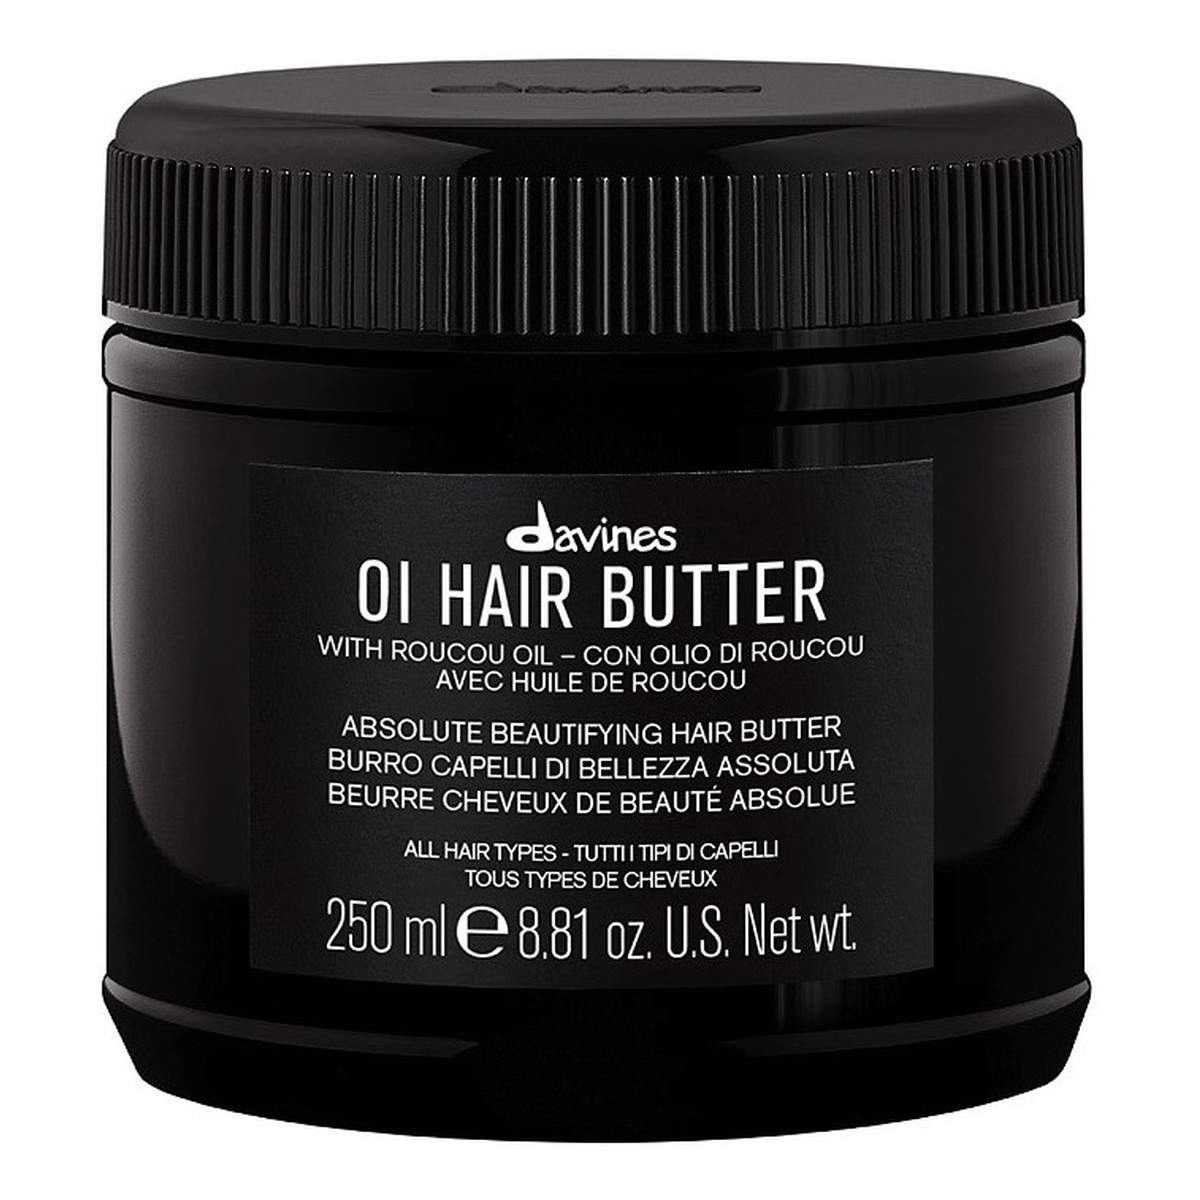 Davines Oi hair butter odżywcze masło do włosów przeciw puszeniu 250ml